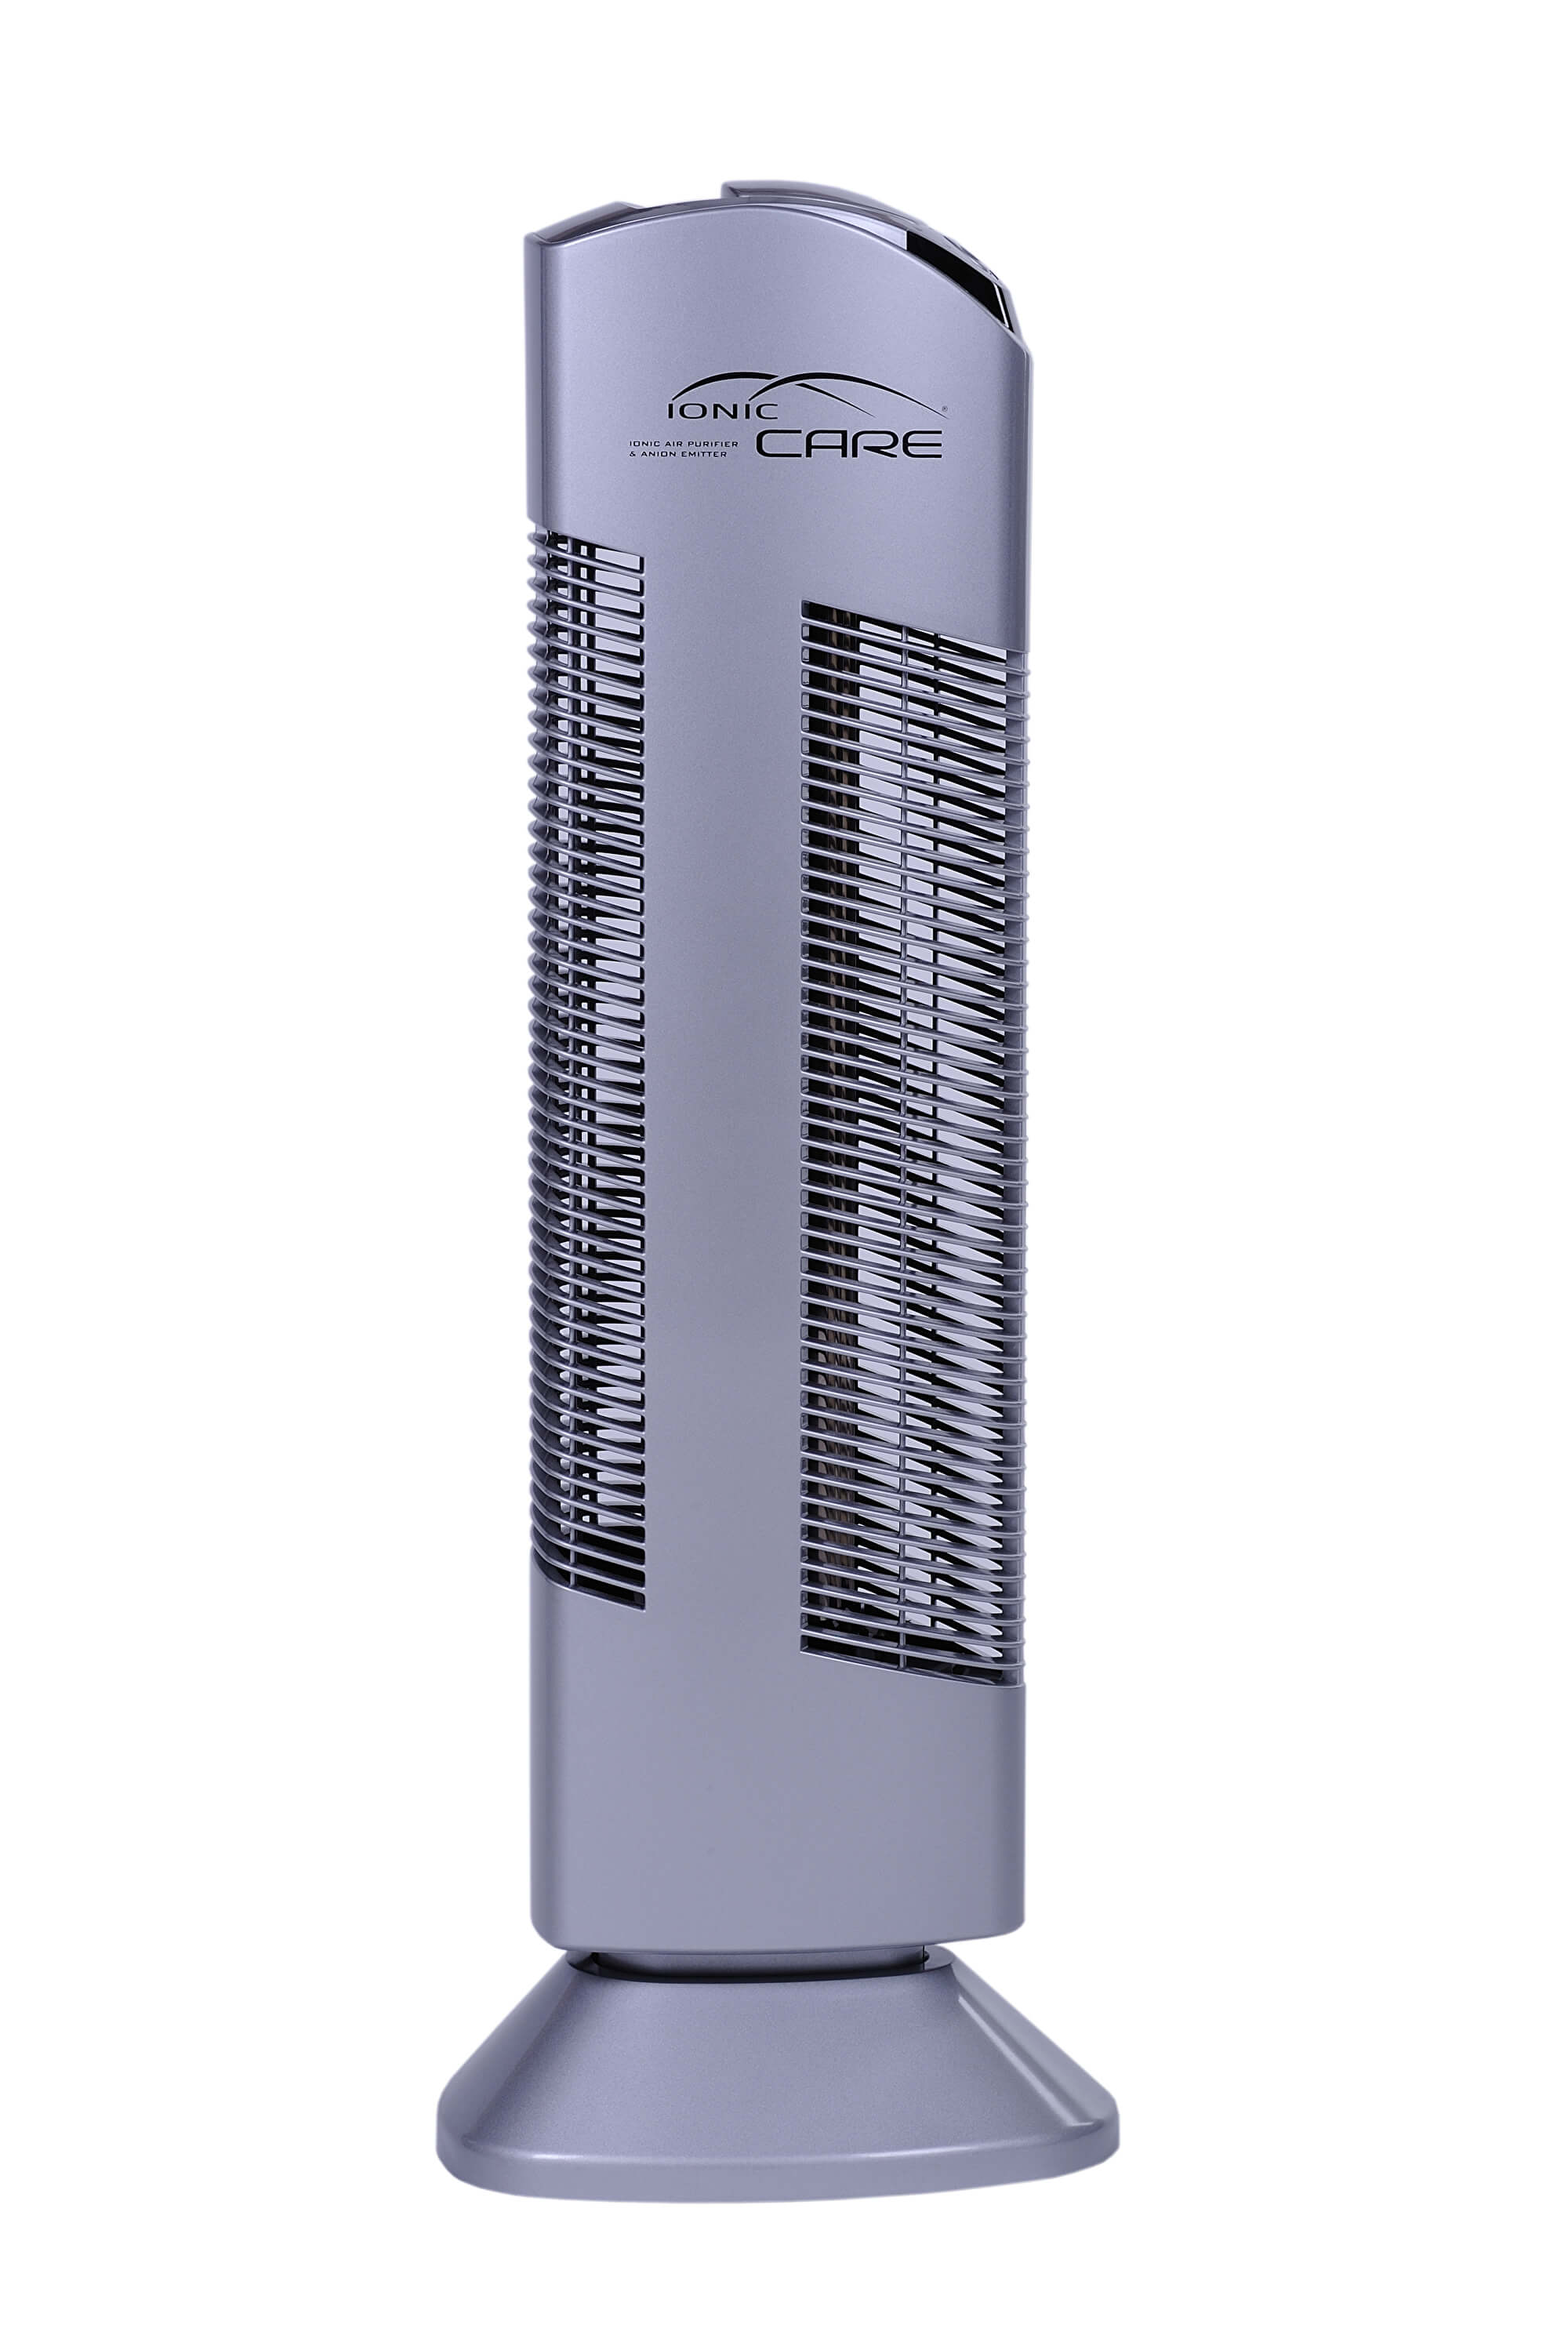 Zobrazit detail výrobku Ionic-CARE Čistička vzduchu Ionic-CARE Triton X6 stříbrná 1 ks + Nápojová láhev Ionic-CARE